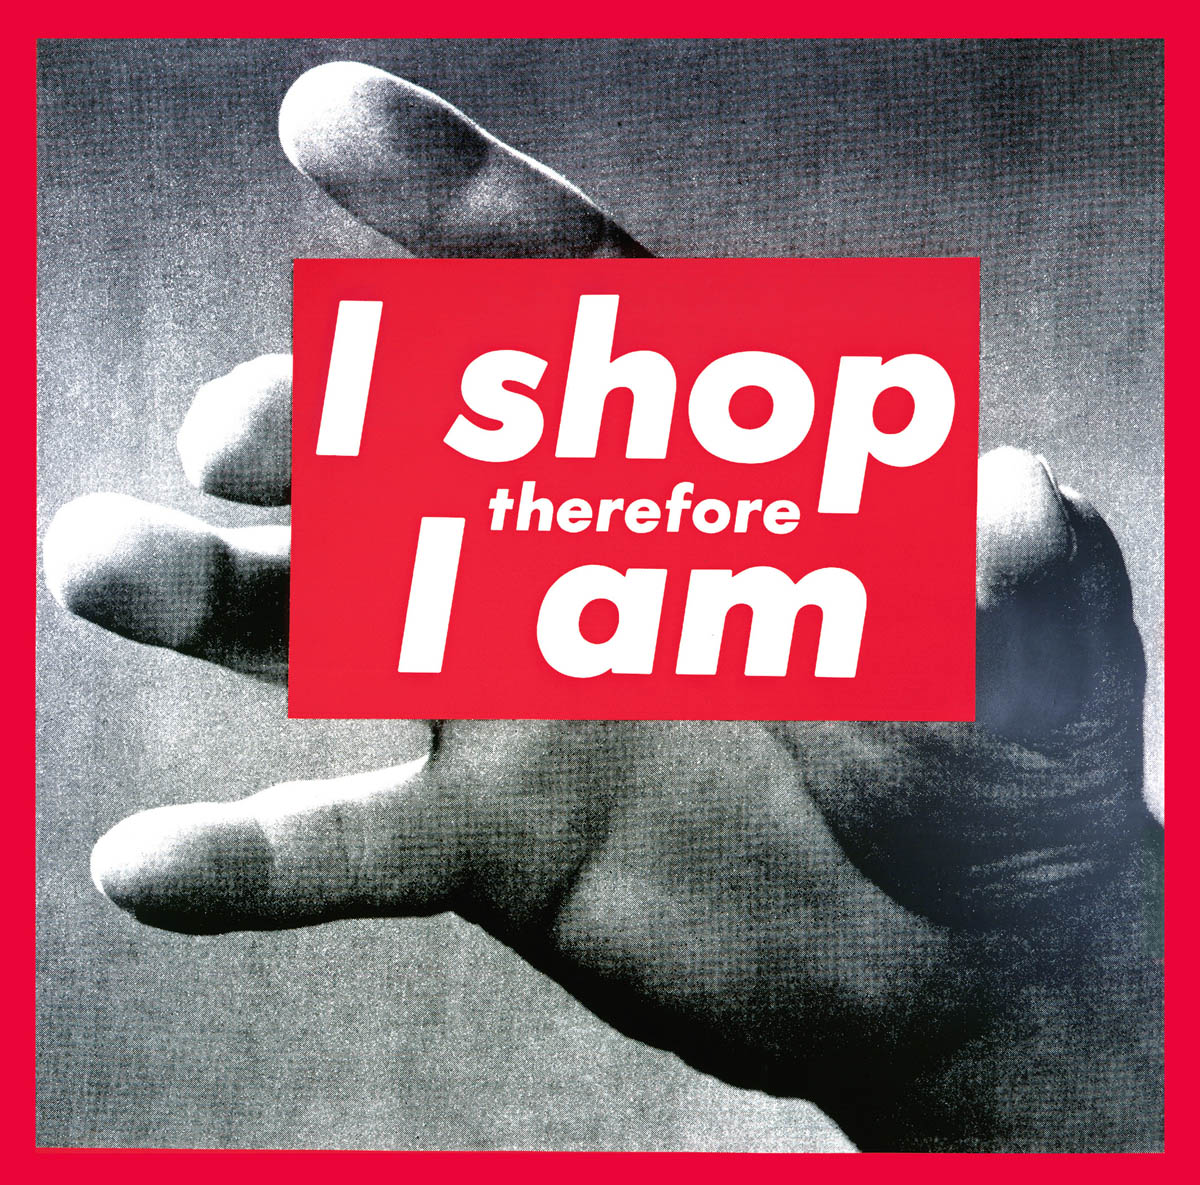 RÃ©sultat de recherche d'images pour "I shop therefore I am,"